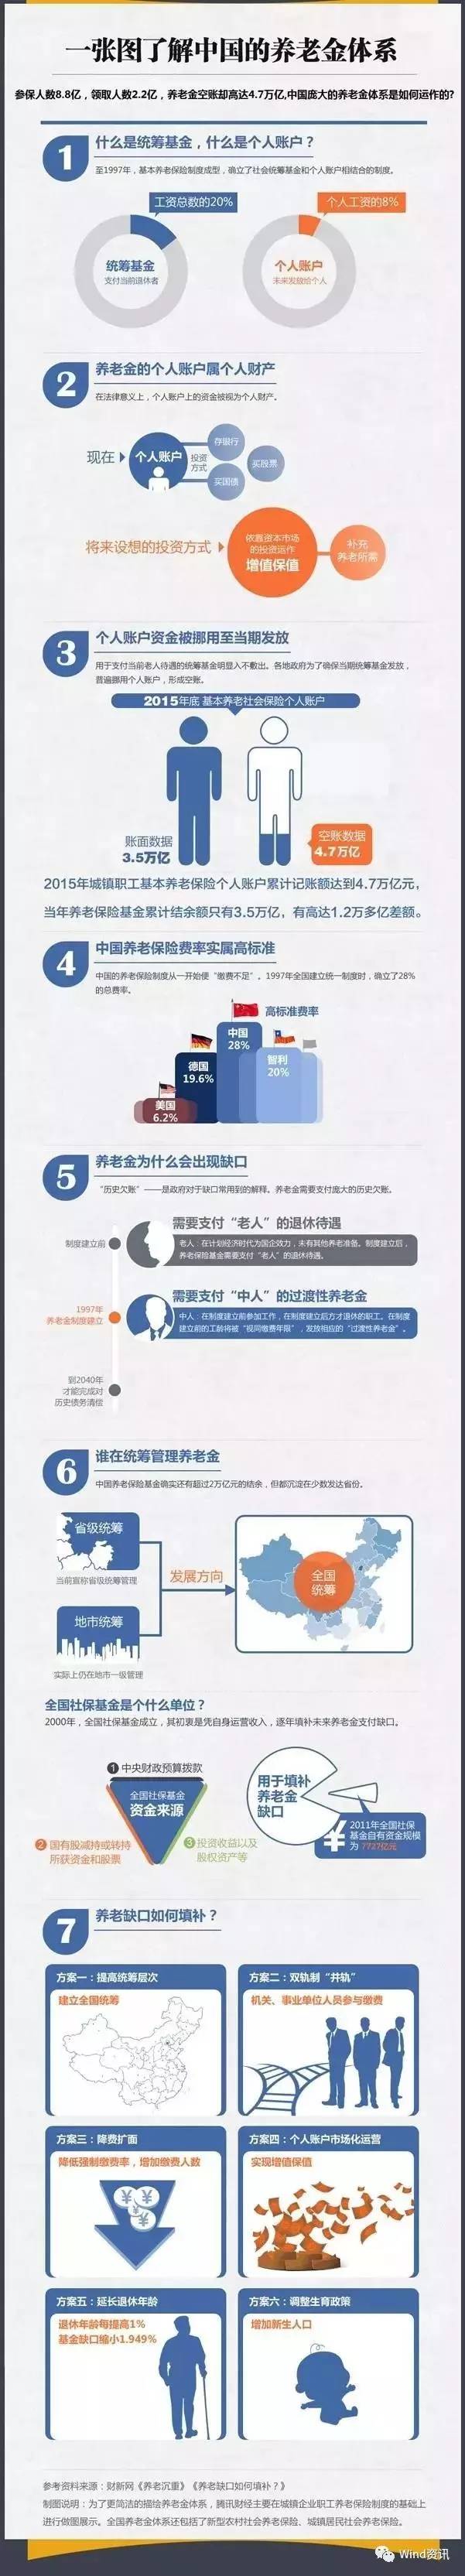 北京上海月均养老金超3000元 养老金2个大动作 